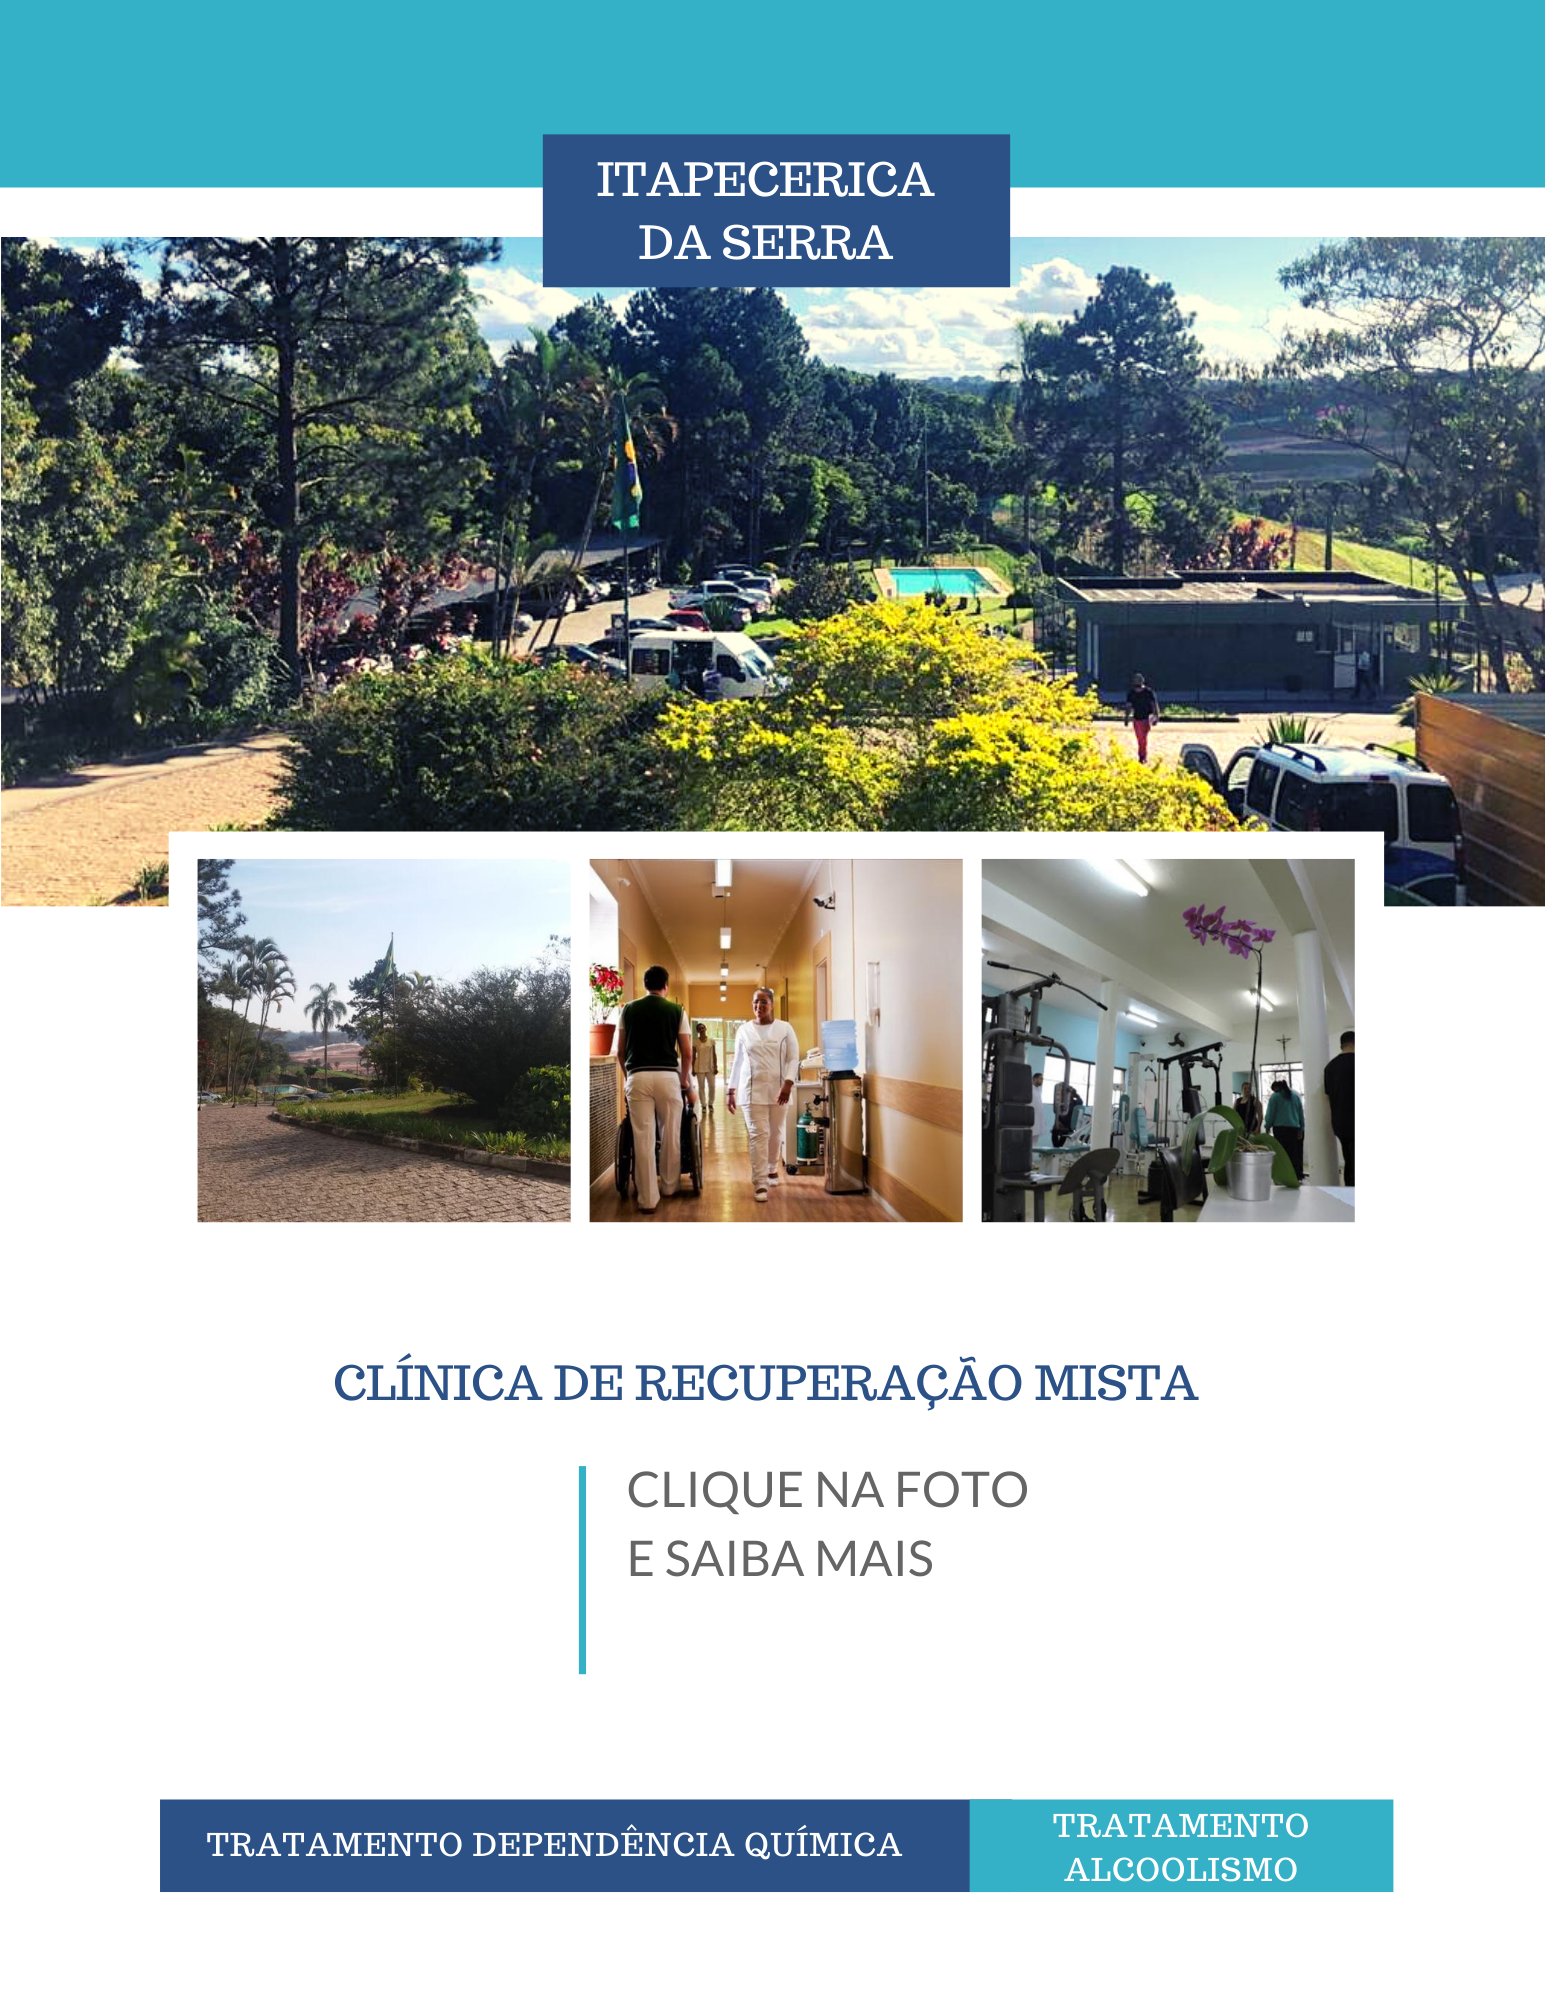 Clínica de recuperação em SP - Unidade Mista - Itapecerica da Serra - Hospitalar